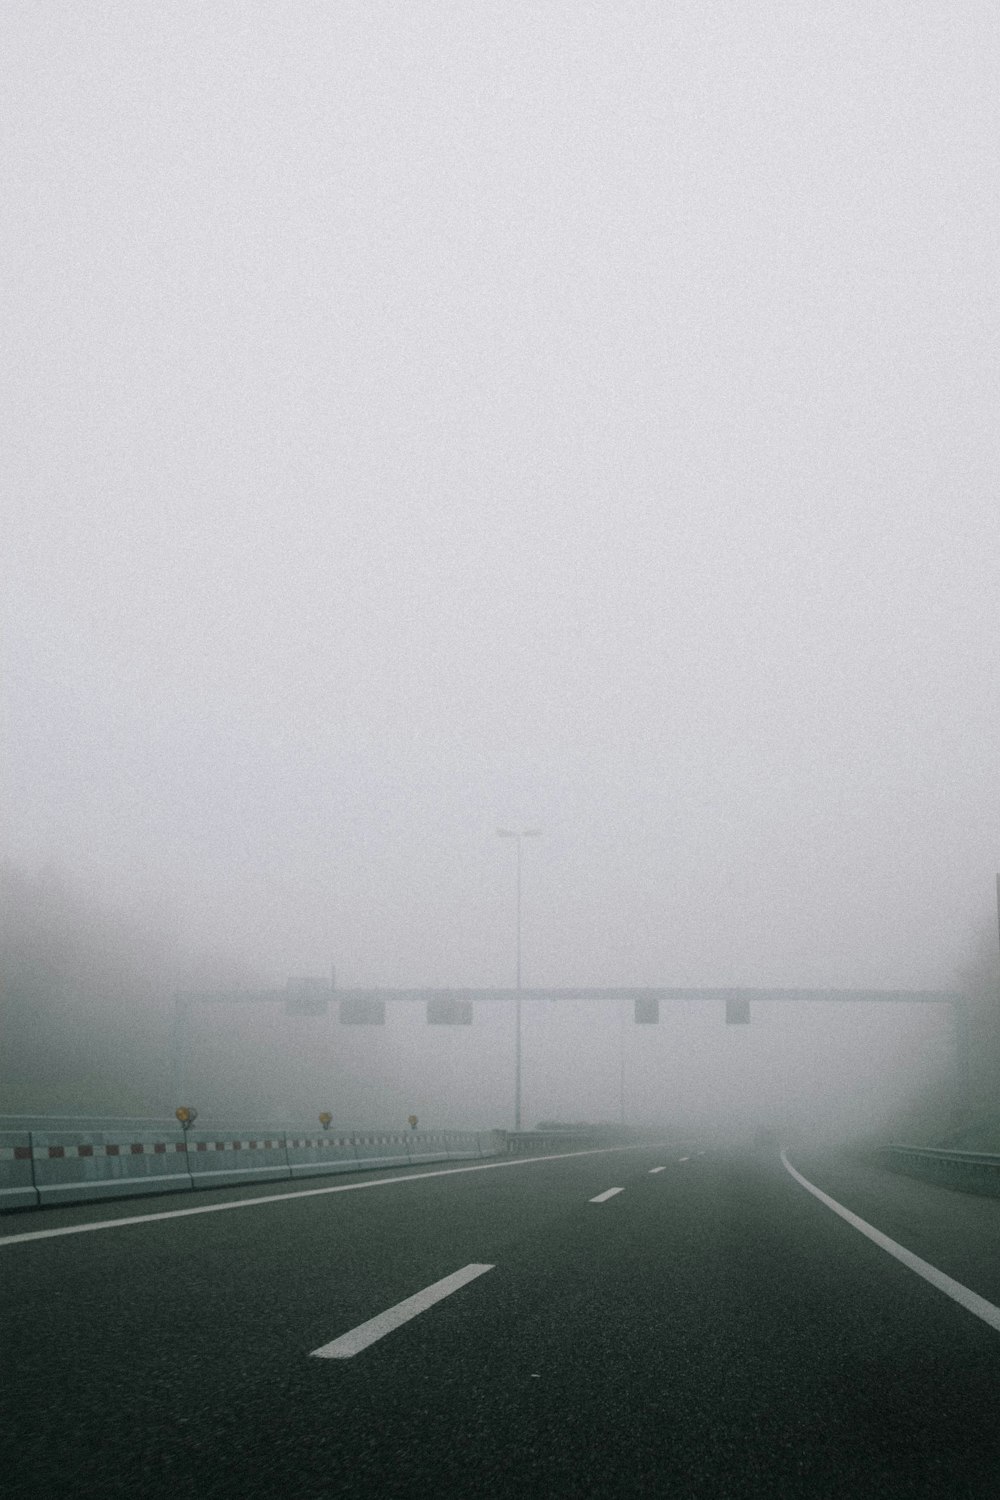 Carretera de asfalto gris durante el tiempo de niebla